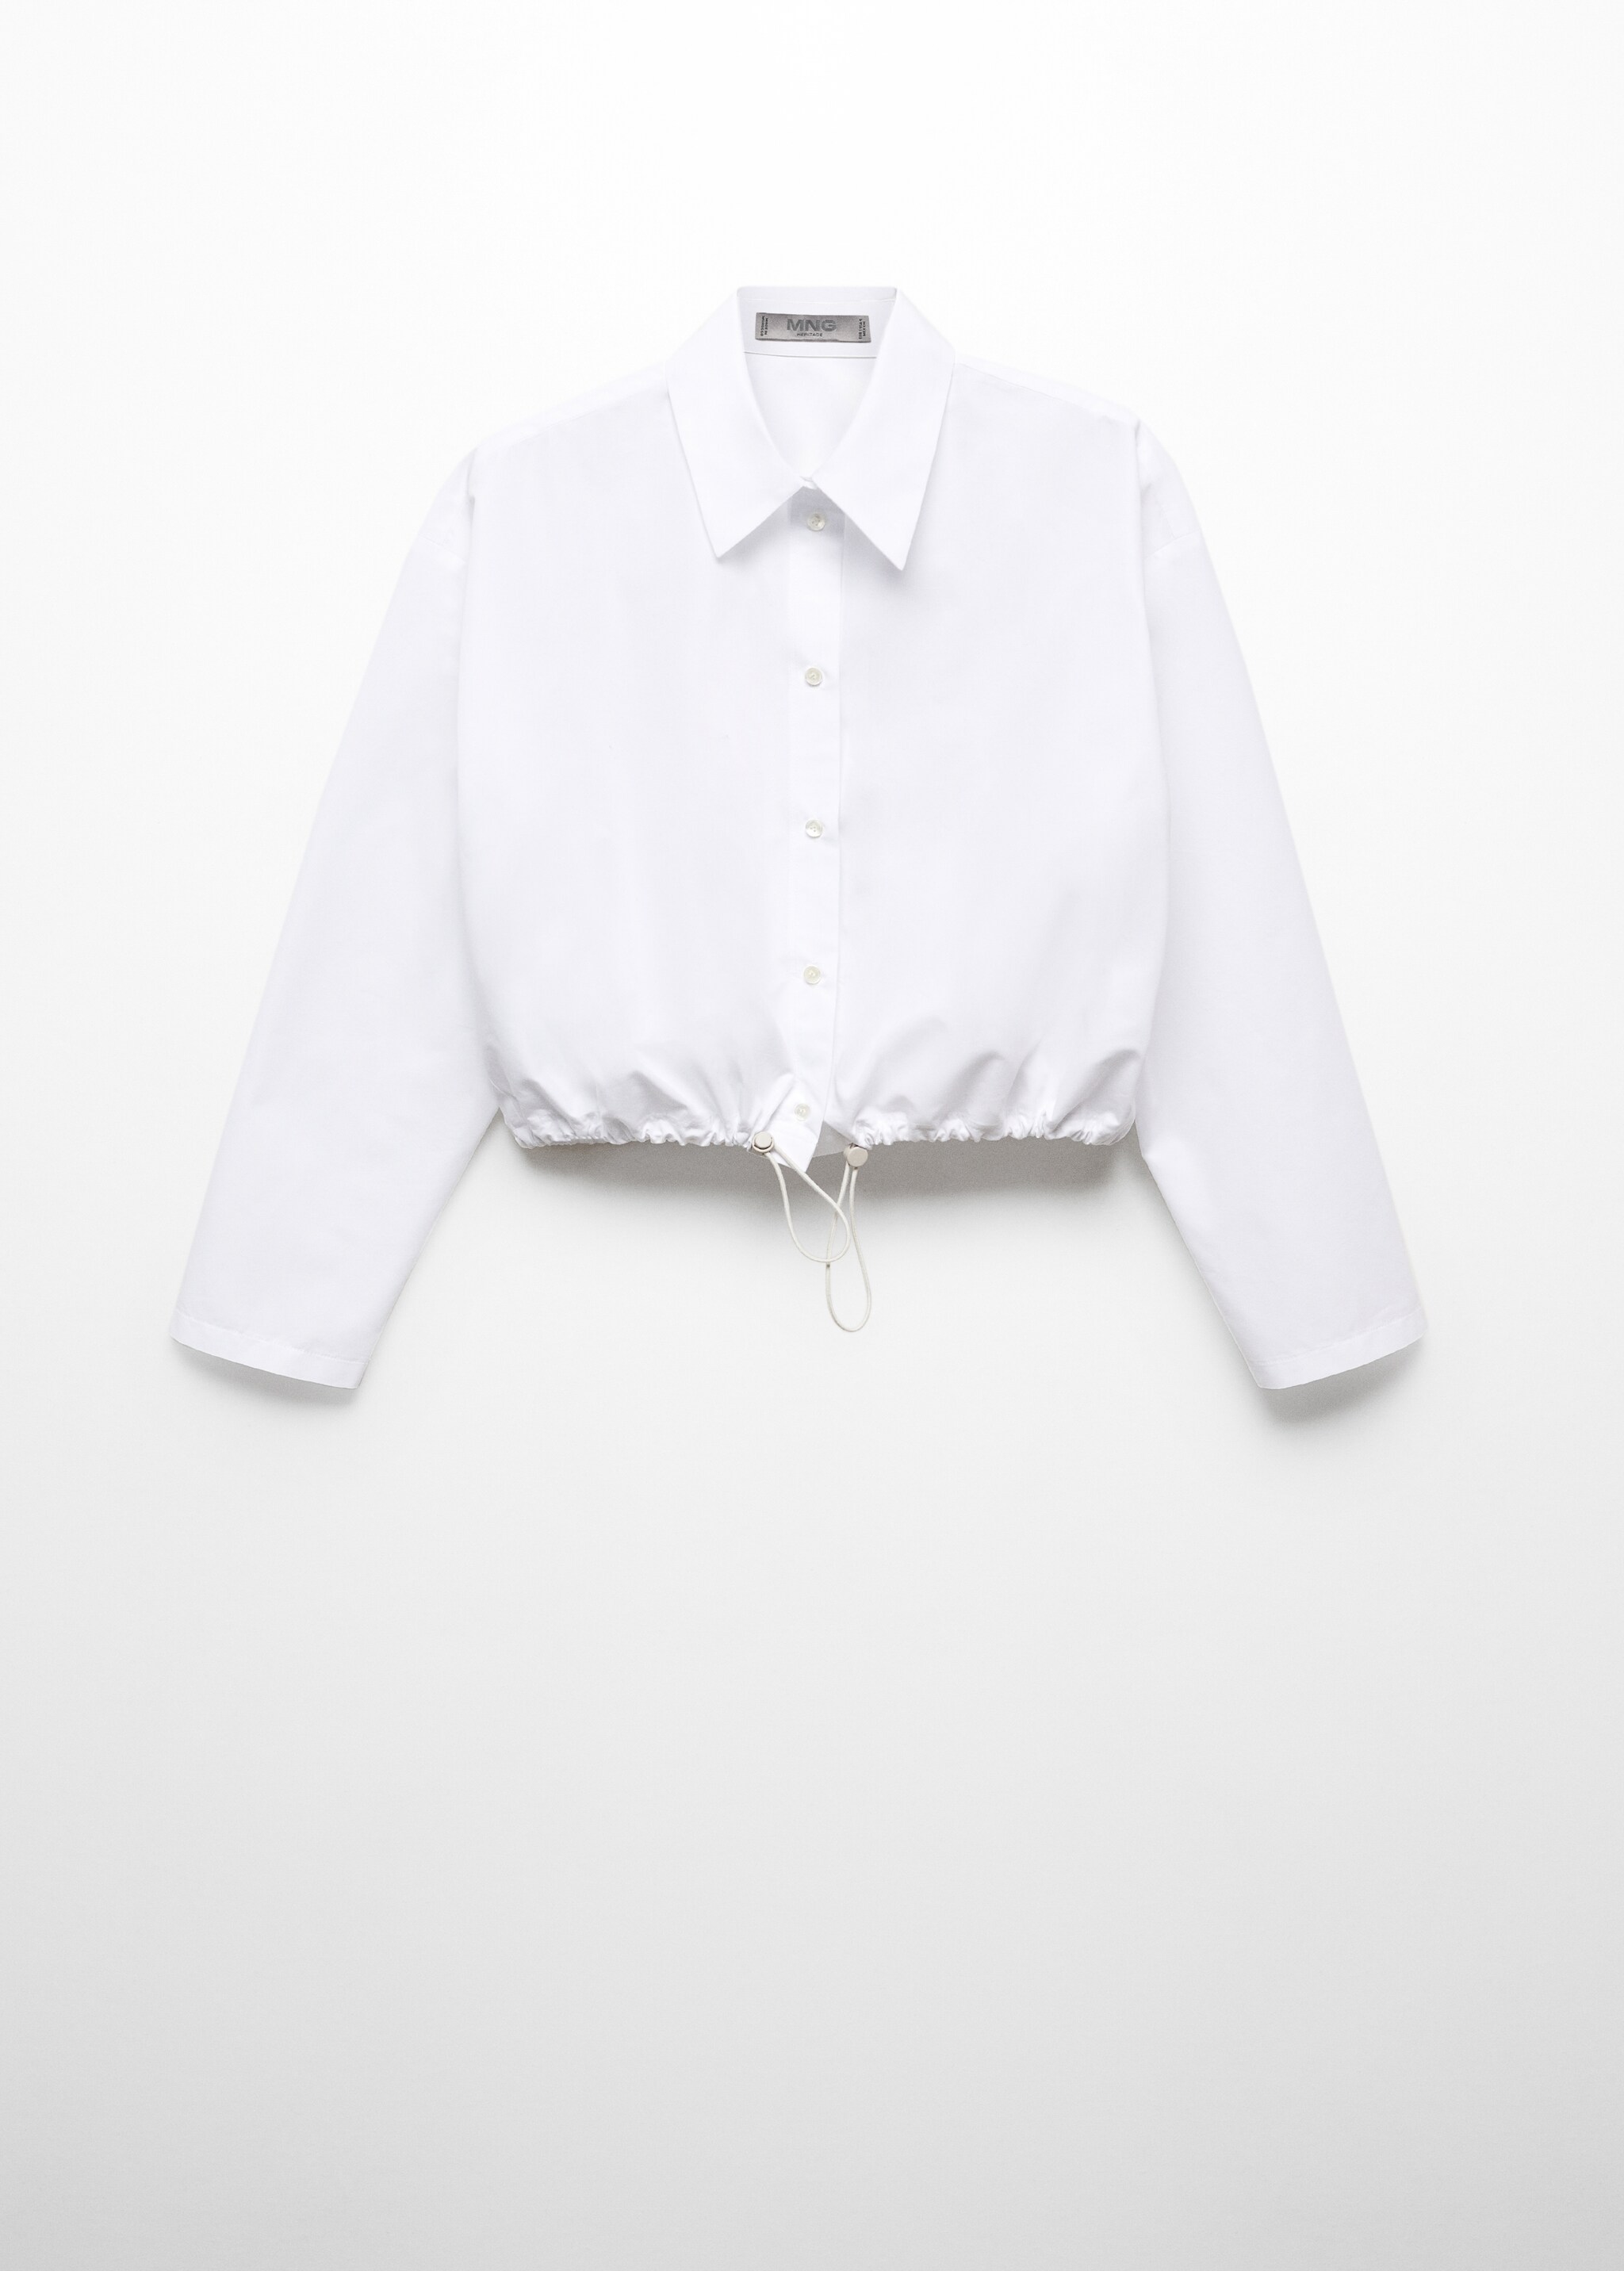 Camisa de algodão com base ajustável - Artigo sem modelo